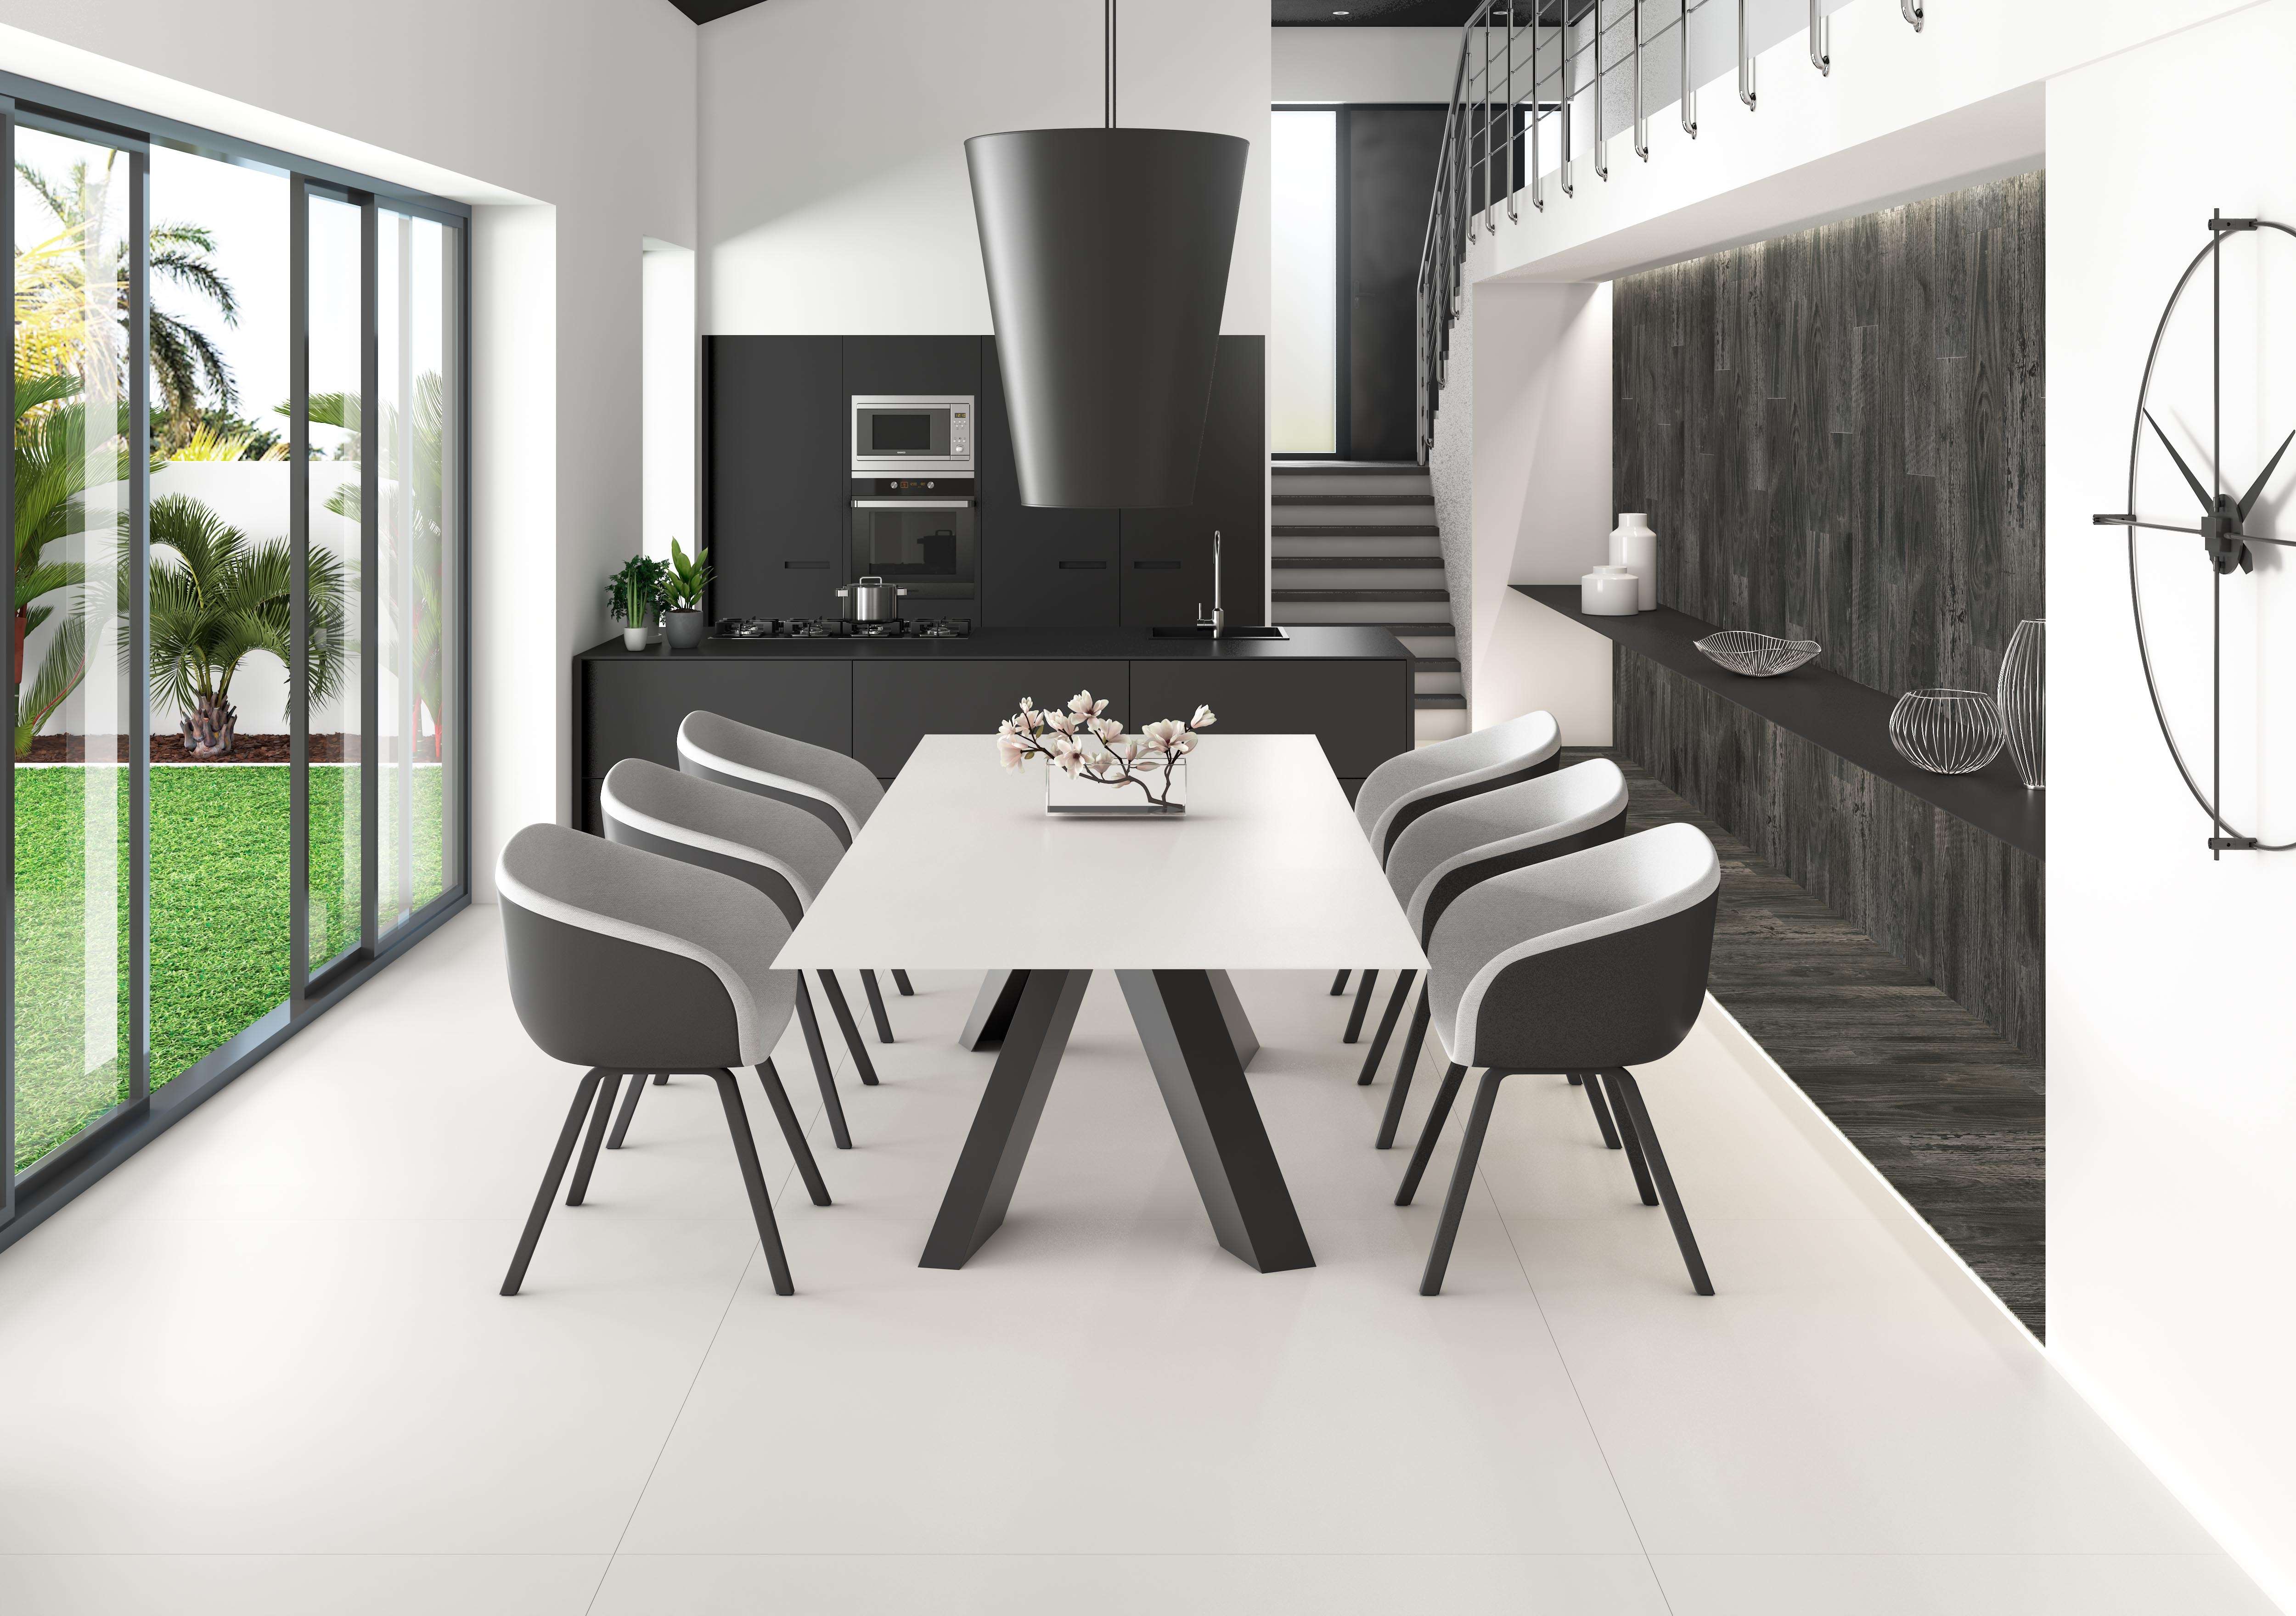 Ceralsio Ceramic White flooring and black ceramic work surface